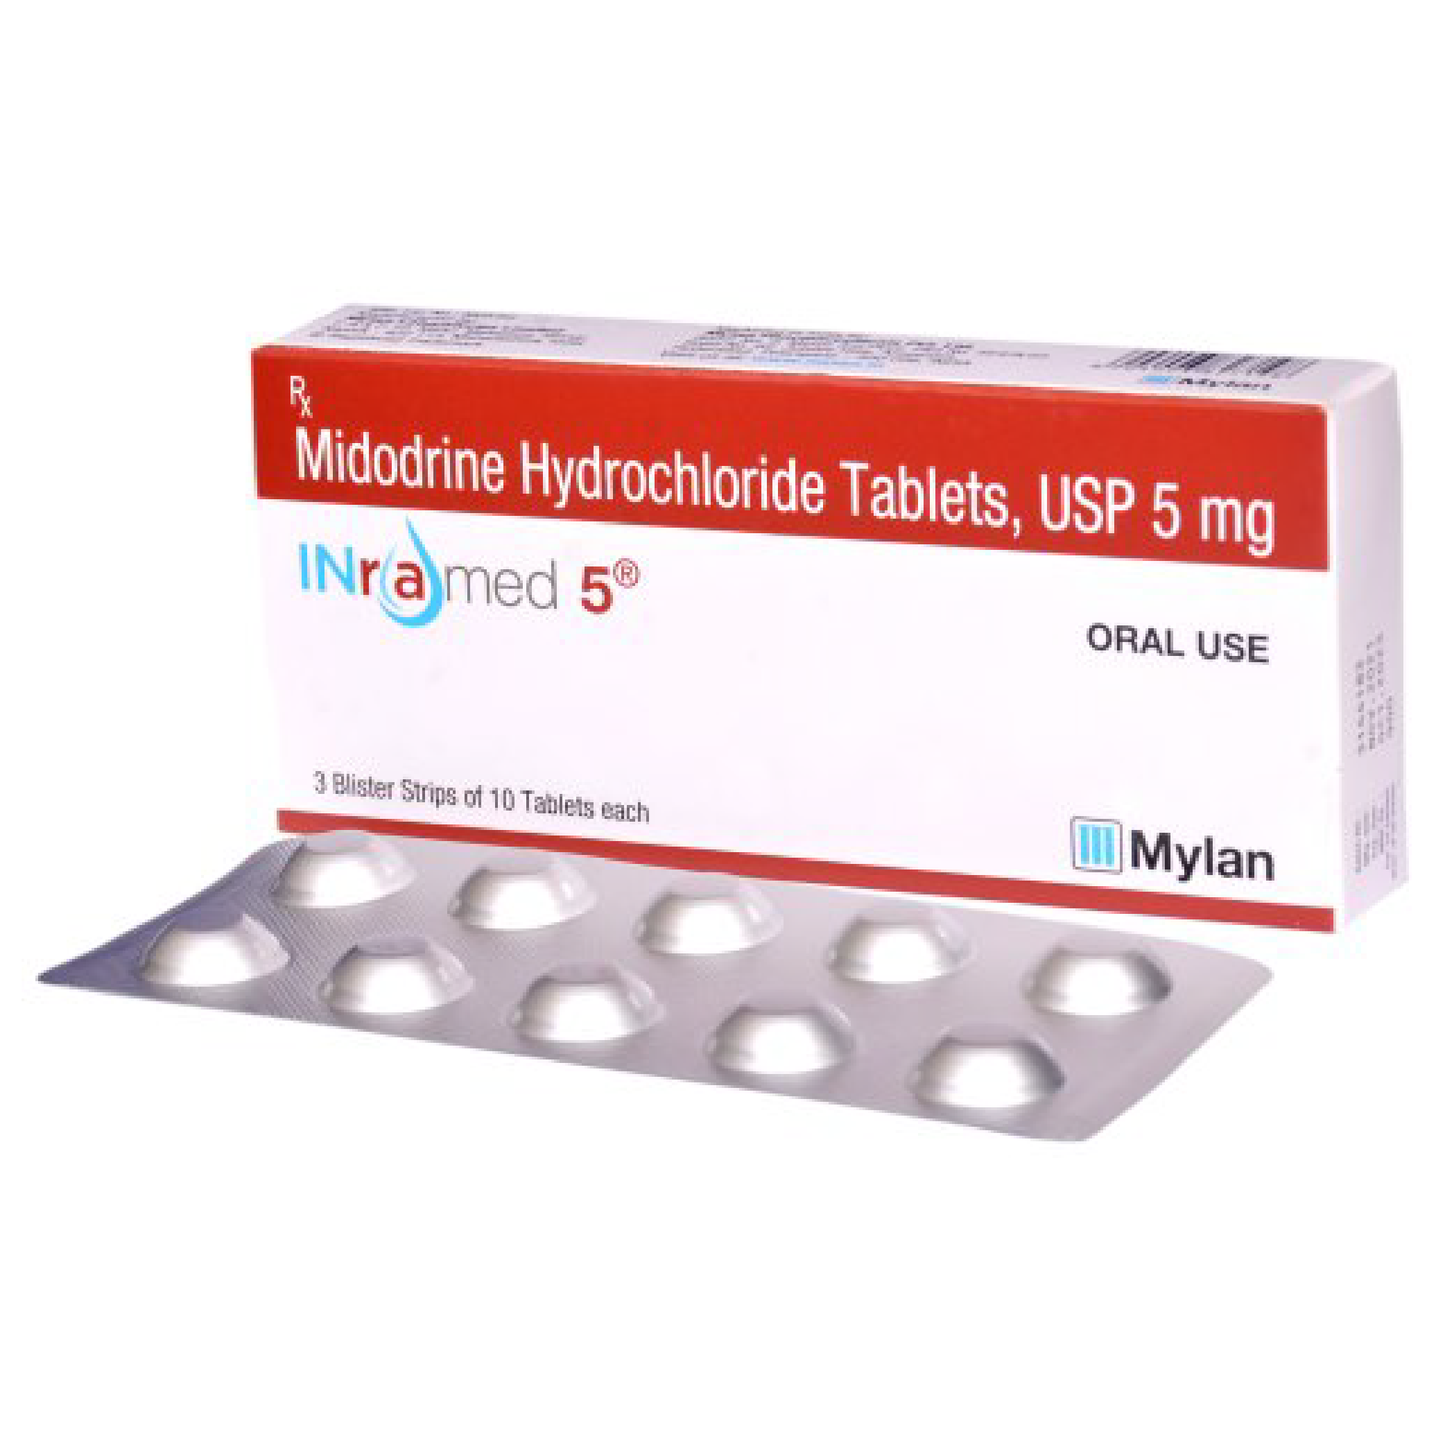 Midrodine 5 mg